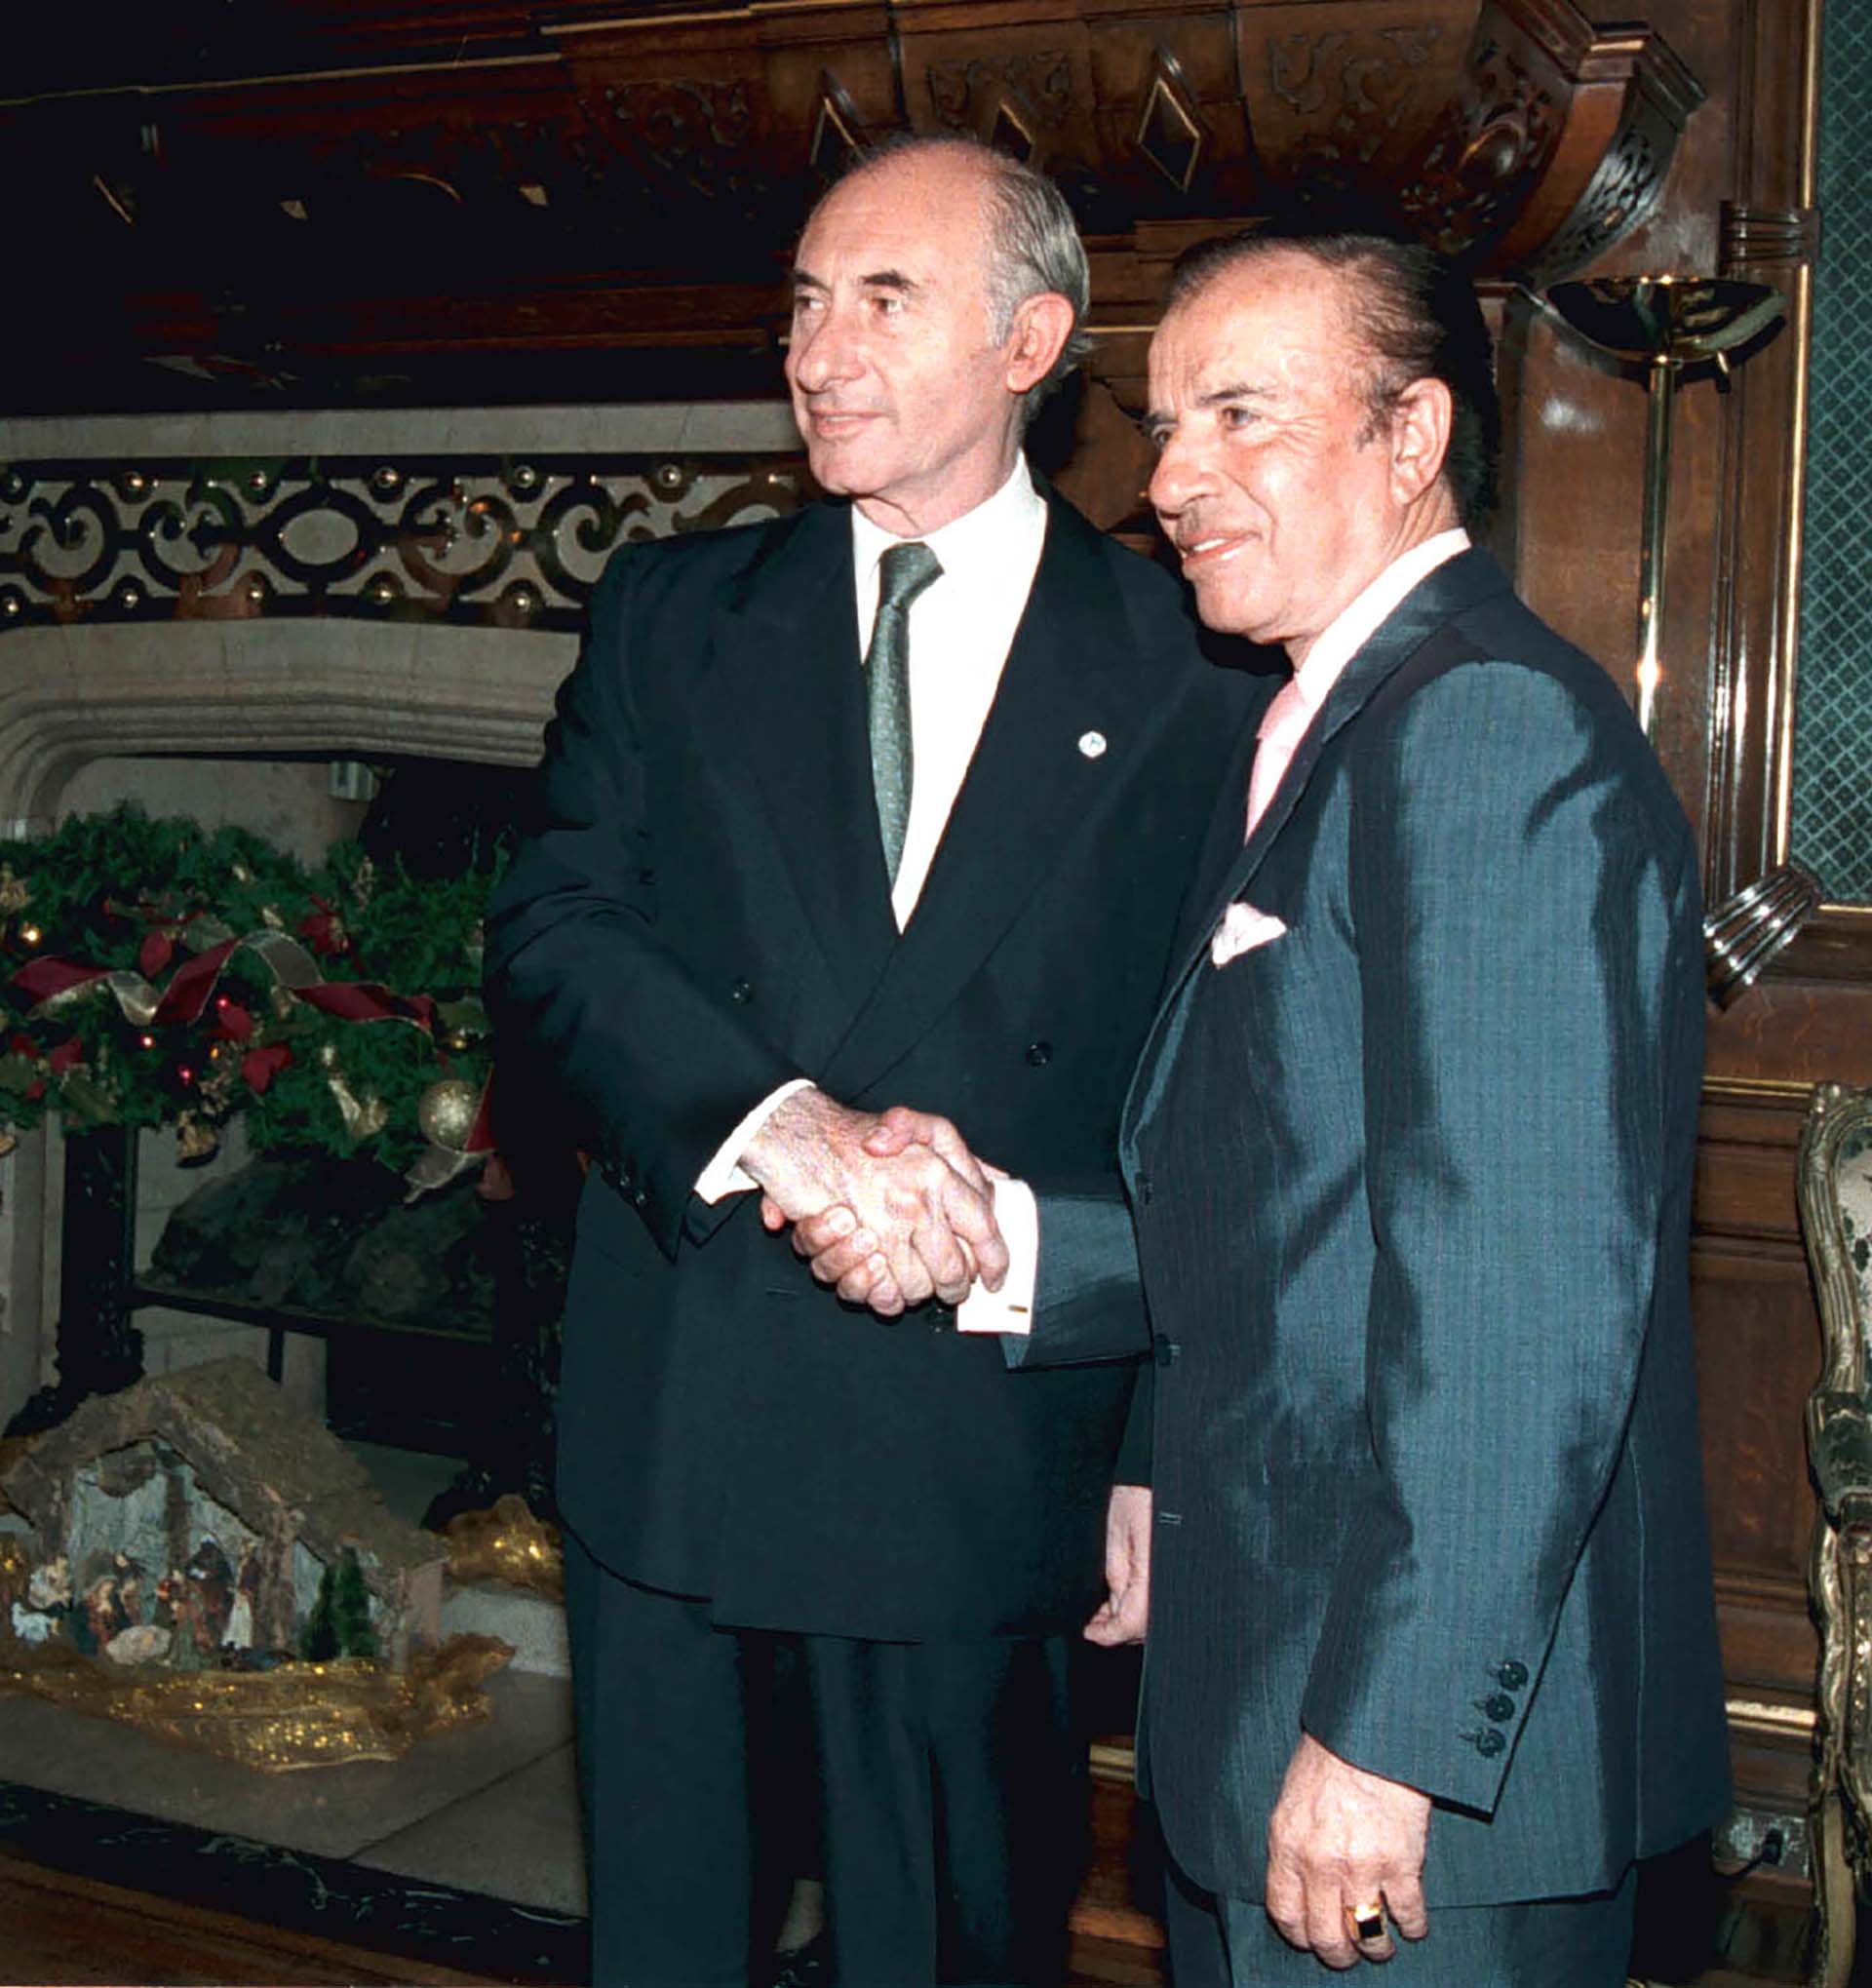 El 10 de diciembre de 1999, Carlos Menem entregó los atributos al tercer presidente constitucional desde el regreso de la democracia en 1983, Fernando De la Rúa